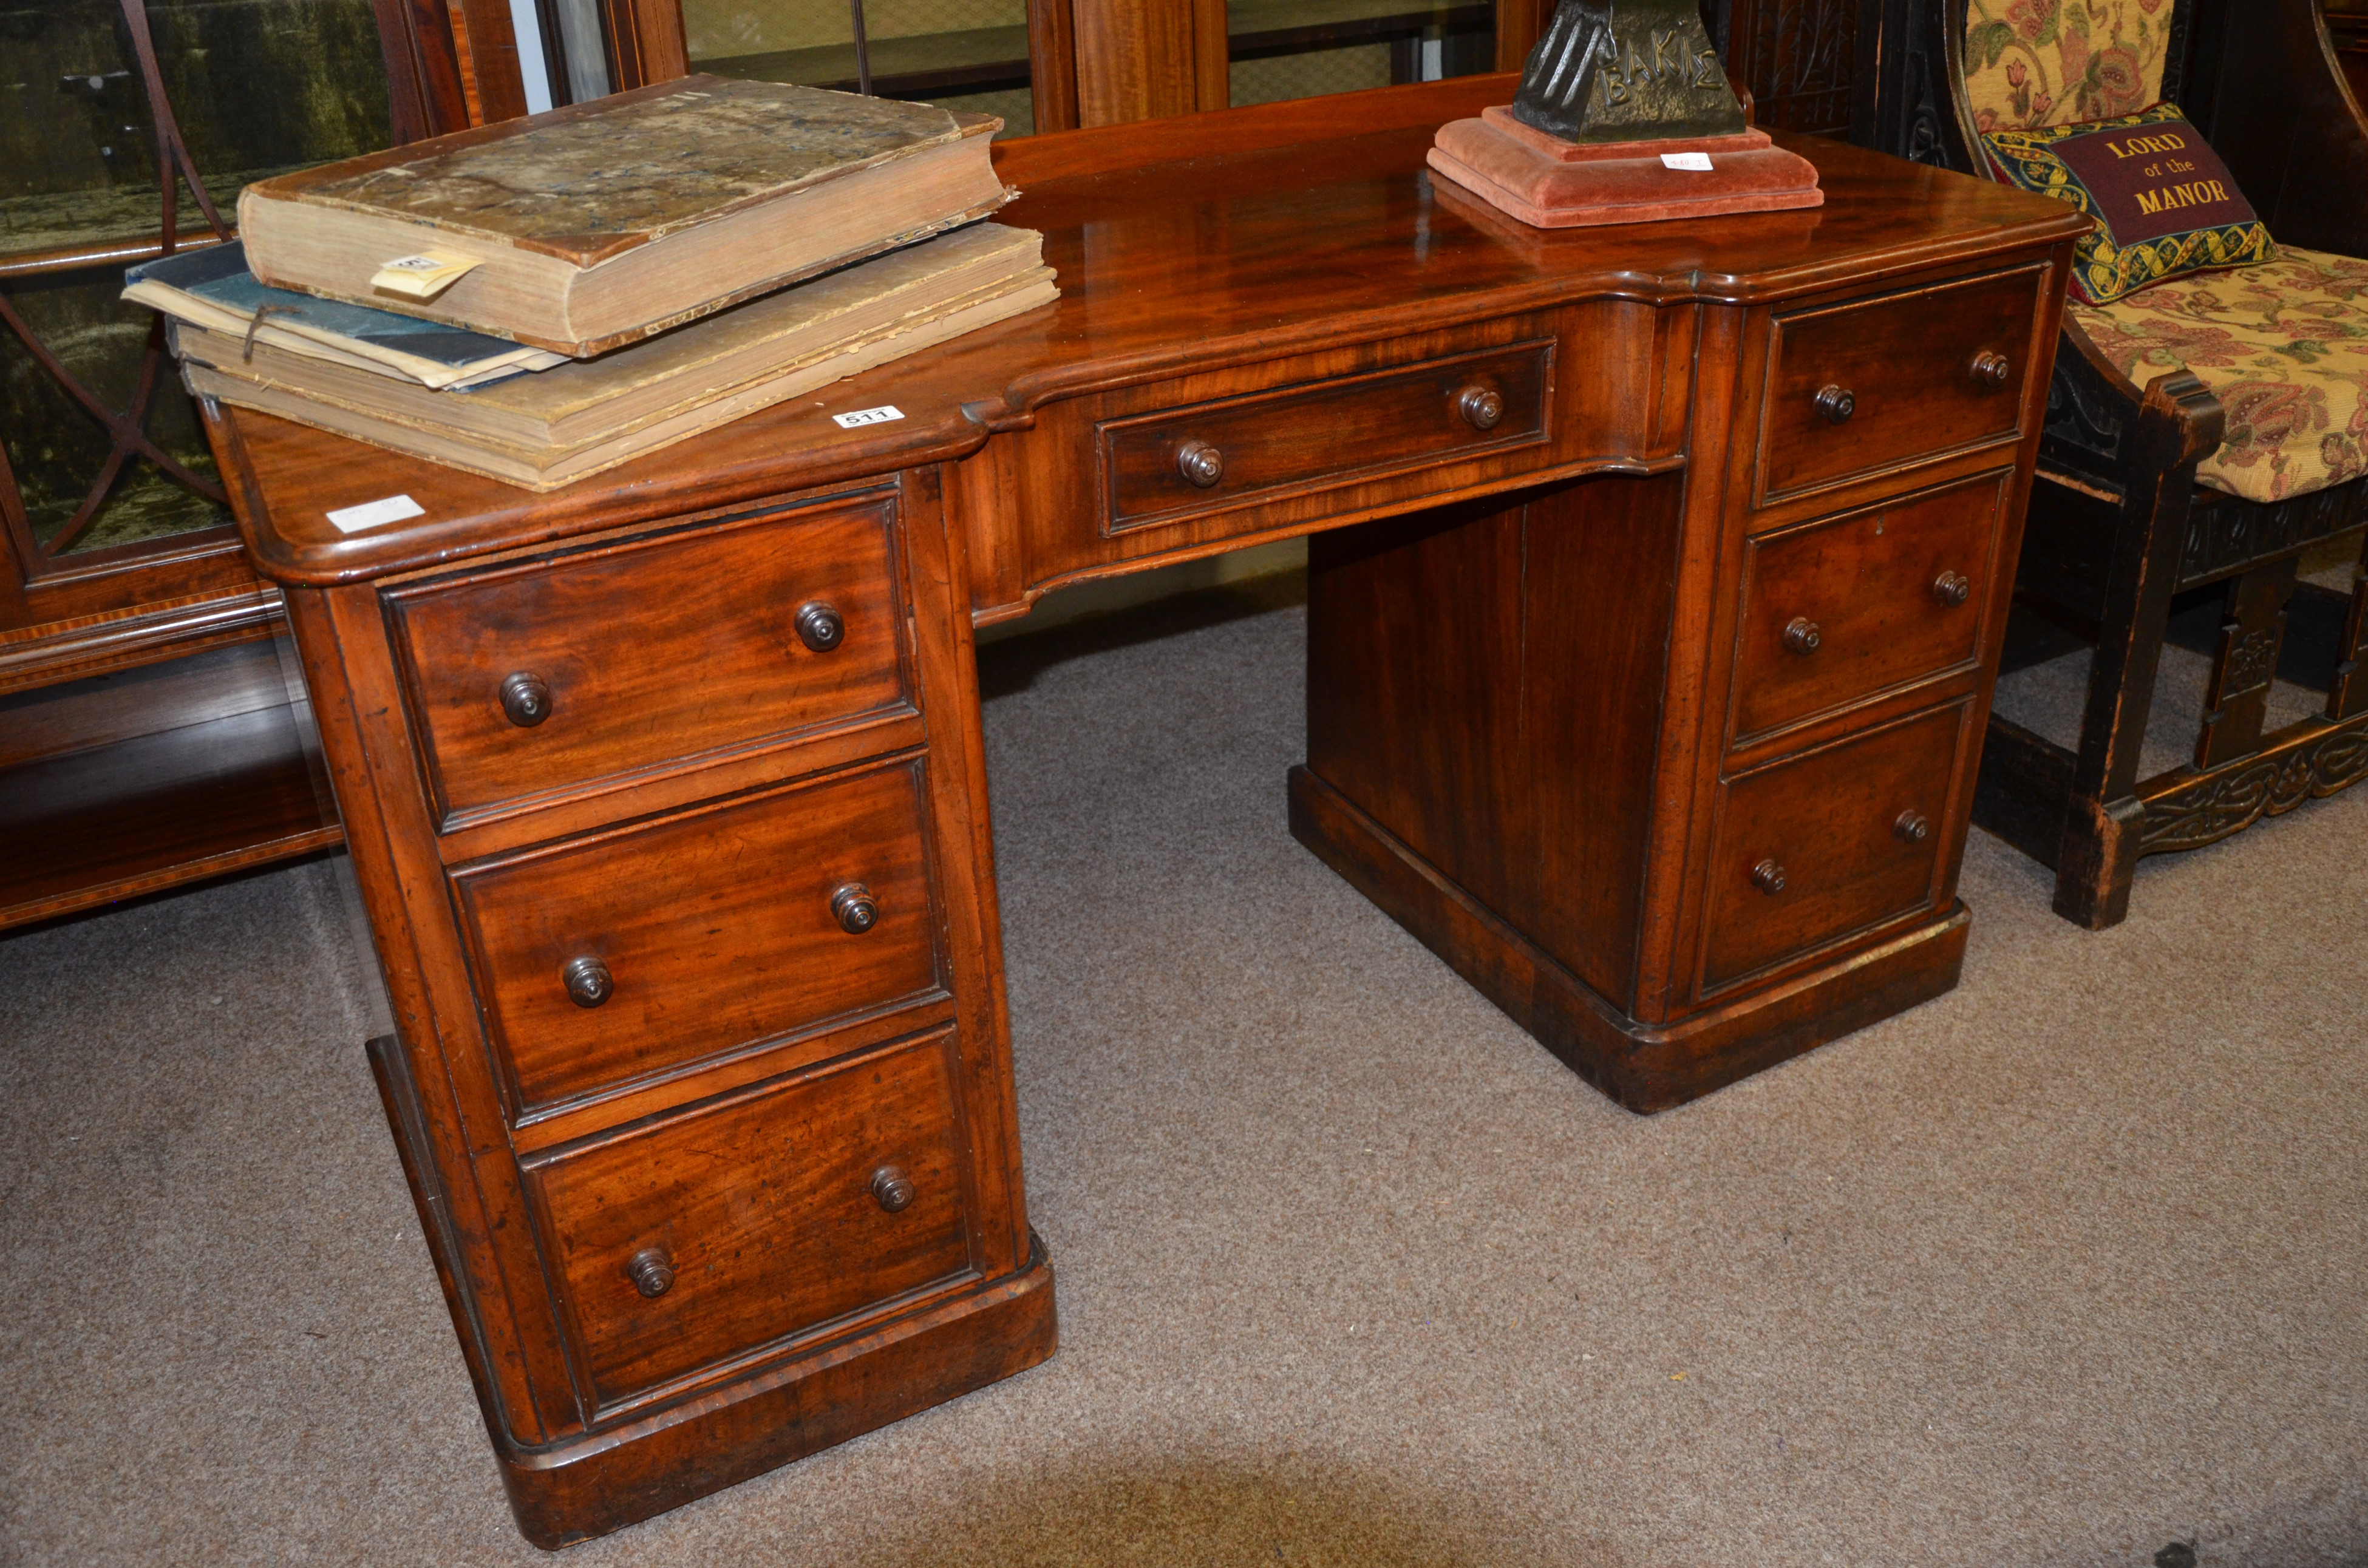 Antique mahogany desk